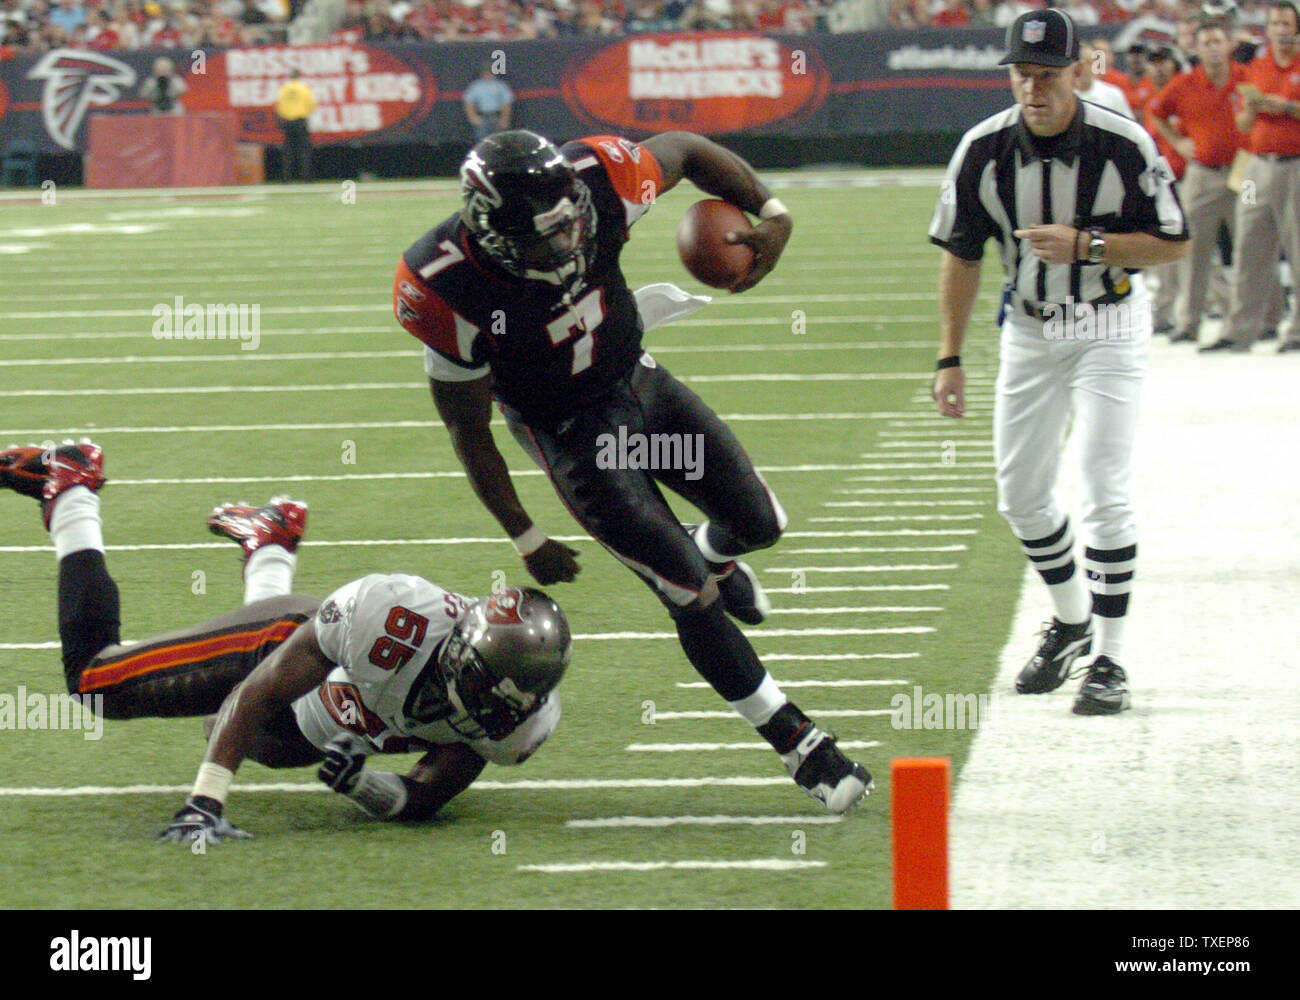 Download Michael Vick - Super Bowl Champion Quarterback Wallpaper